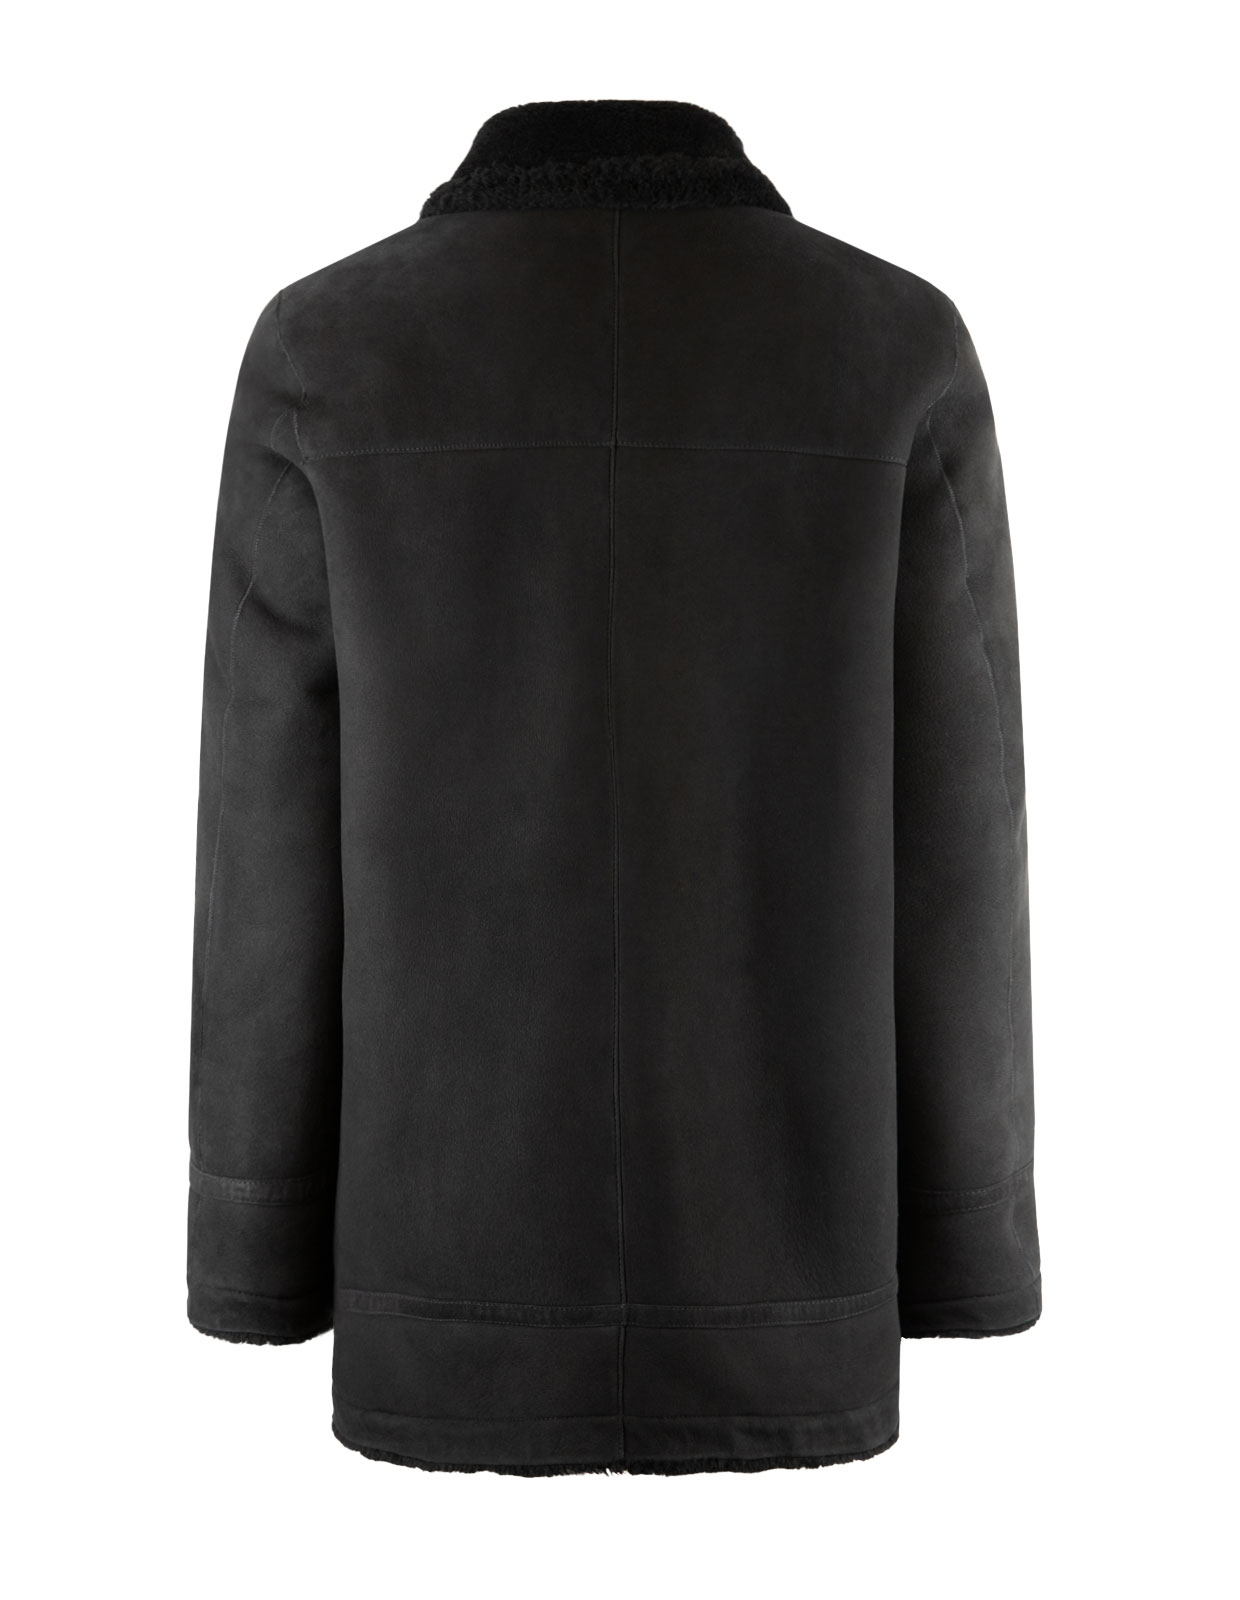 Shearling Jacket Black